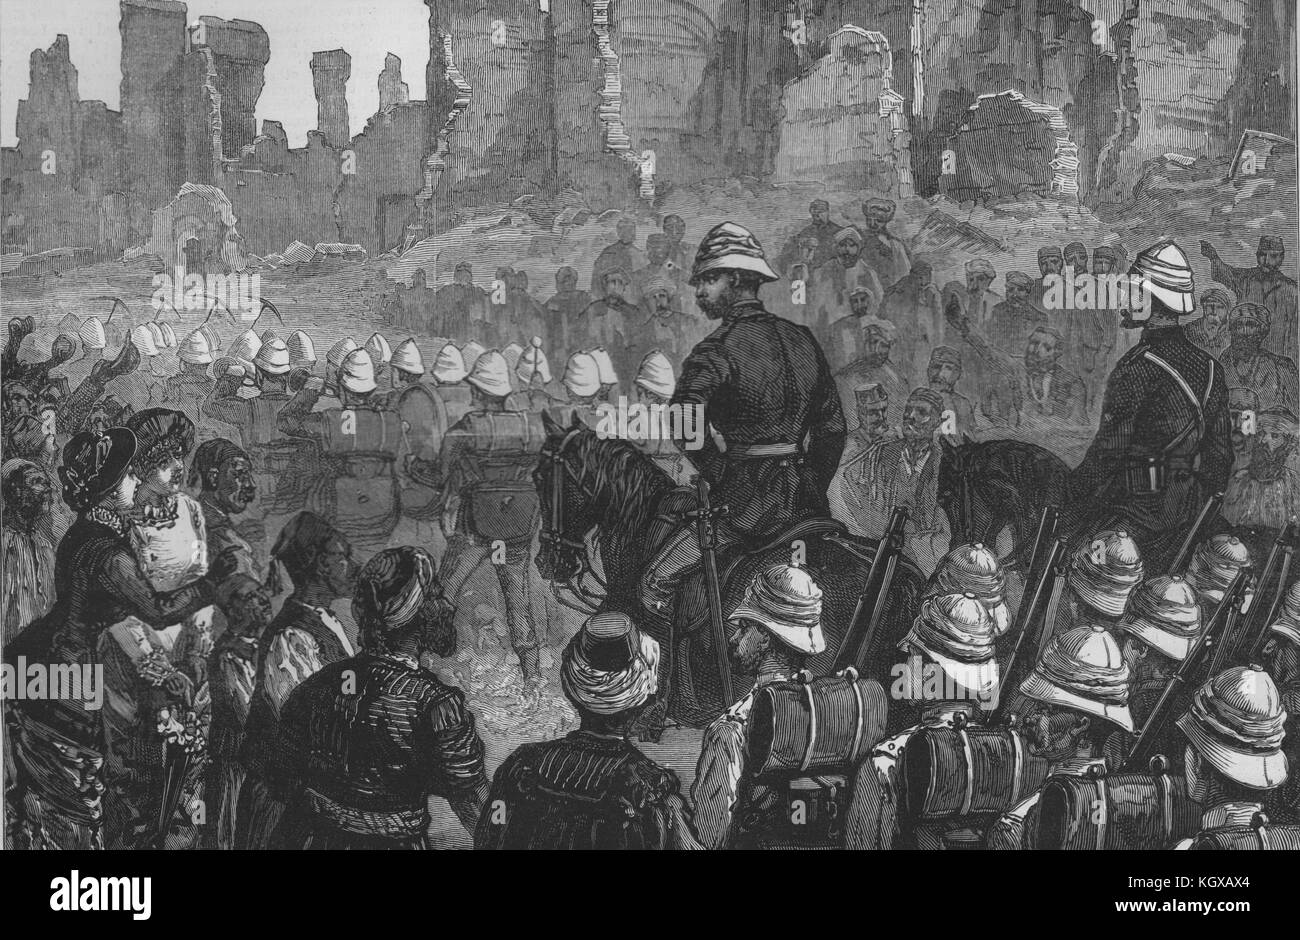 Les Grenadier Guards sur les sentiers de l'Alexandria. L'Égypte 1882. L'Illustrated London News Banque D'Images